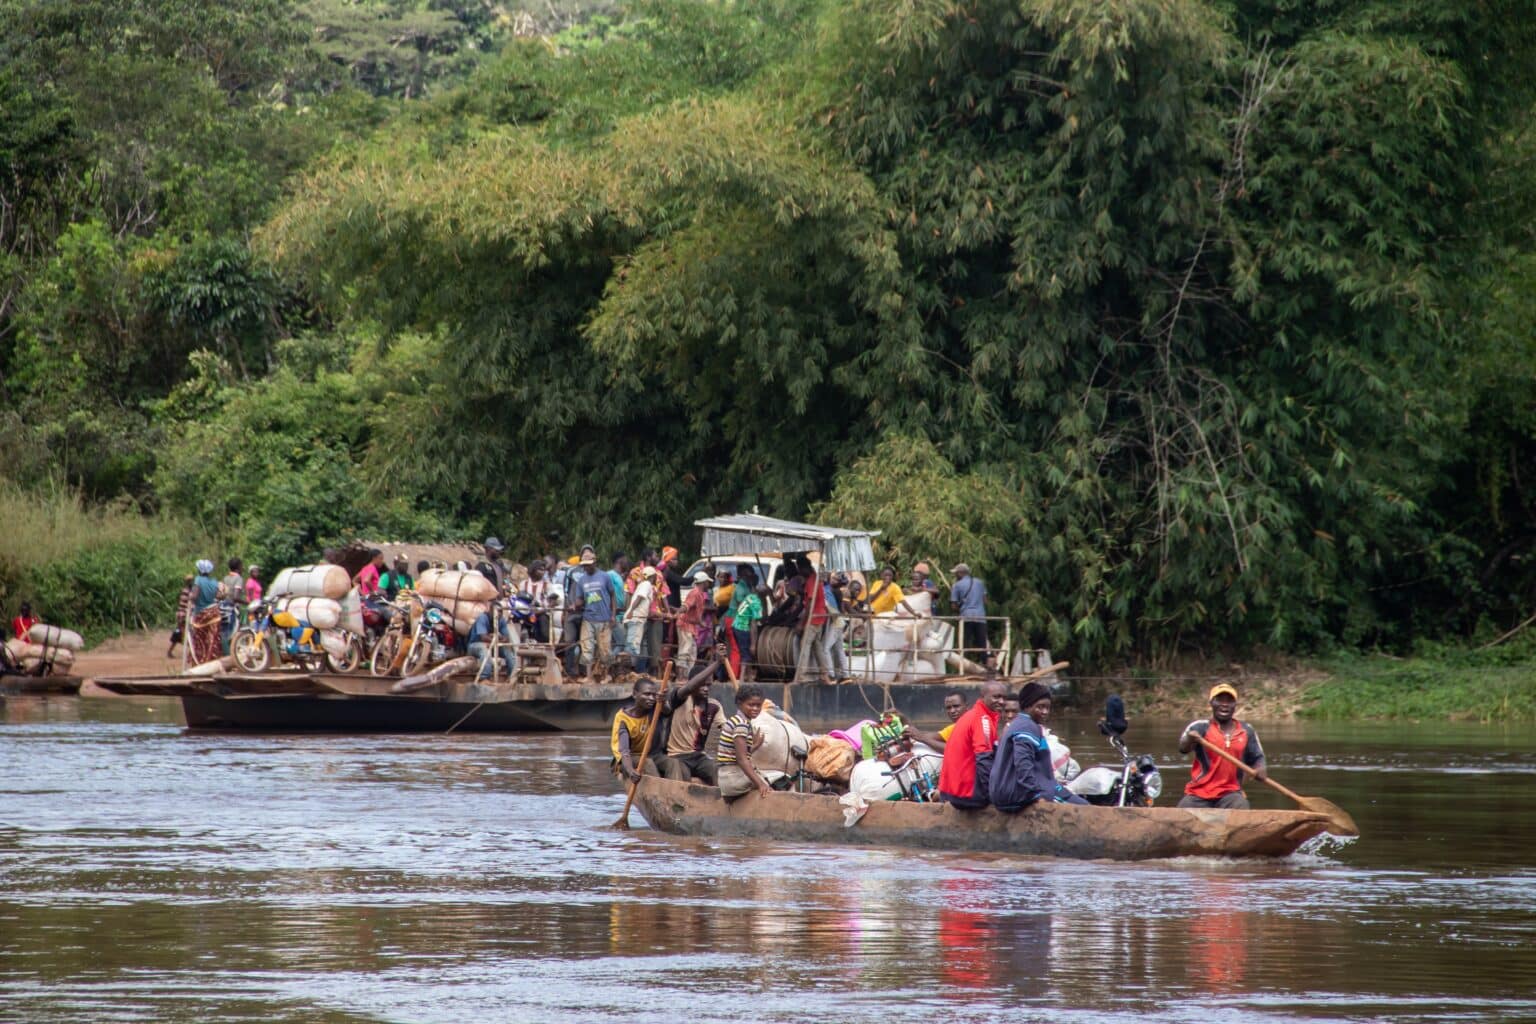 אסון באפריקה: יותר מ-50 בני אדם מתו לאחר שסירה התהפכה